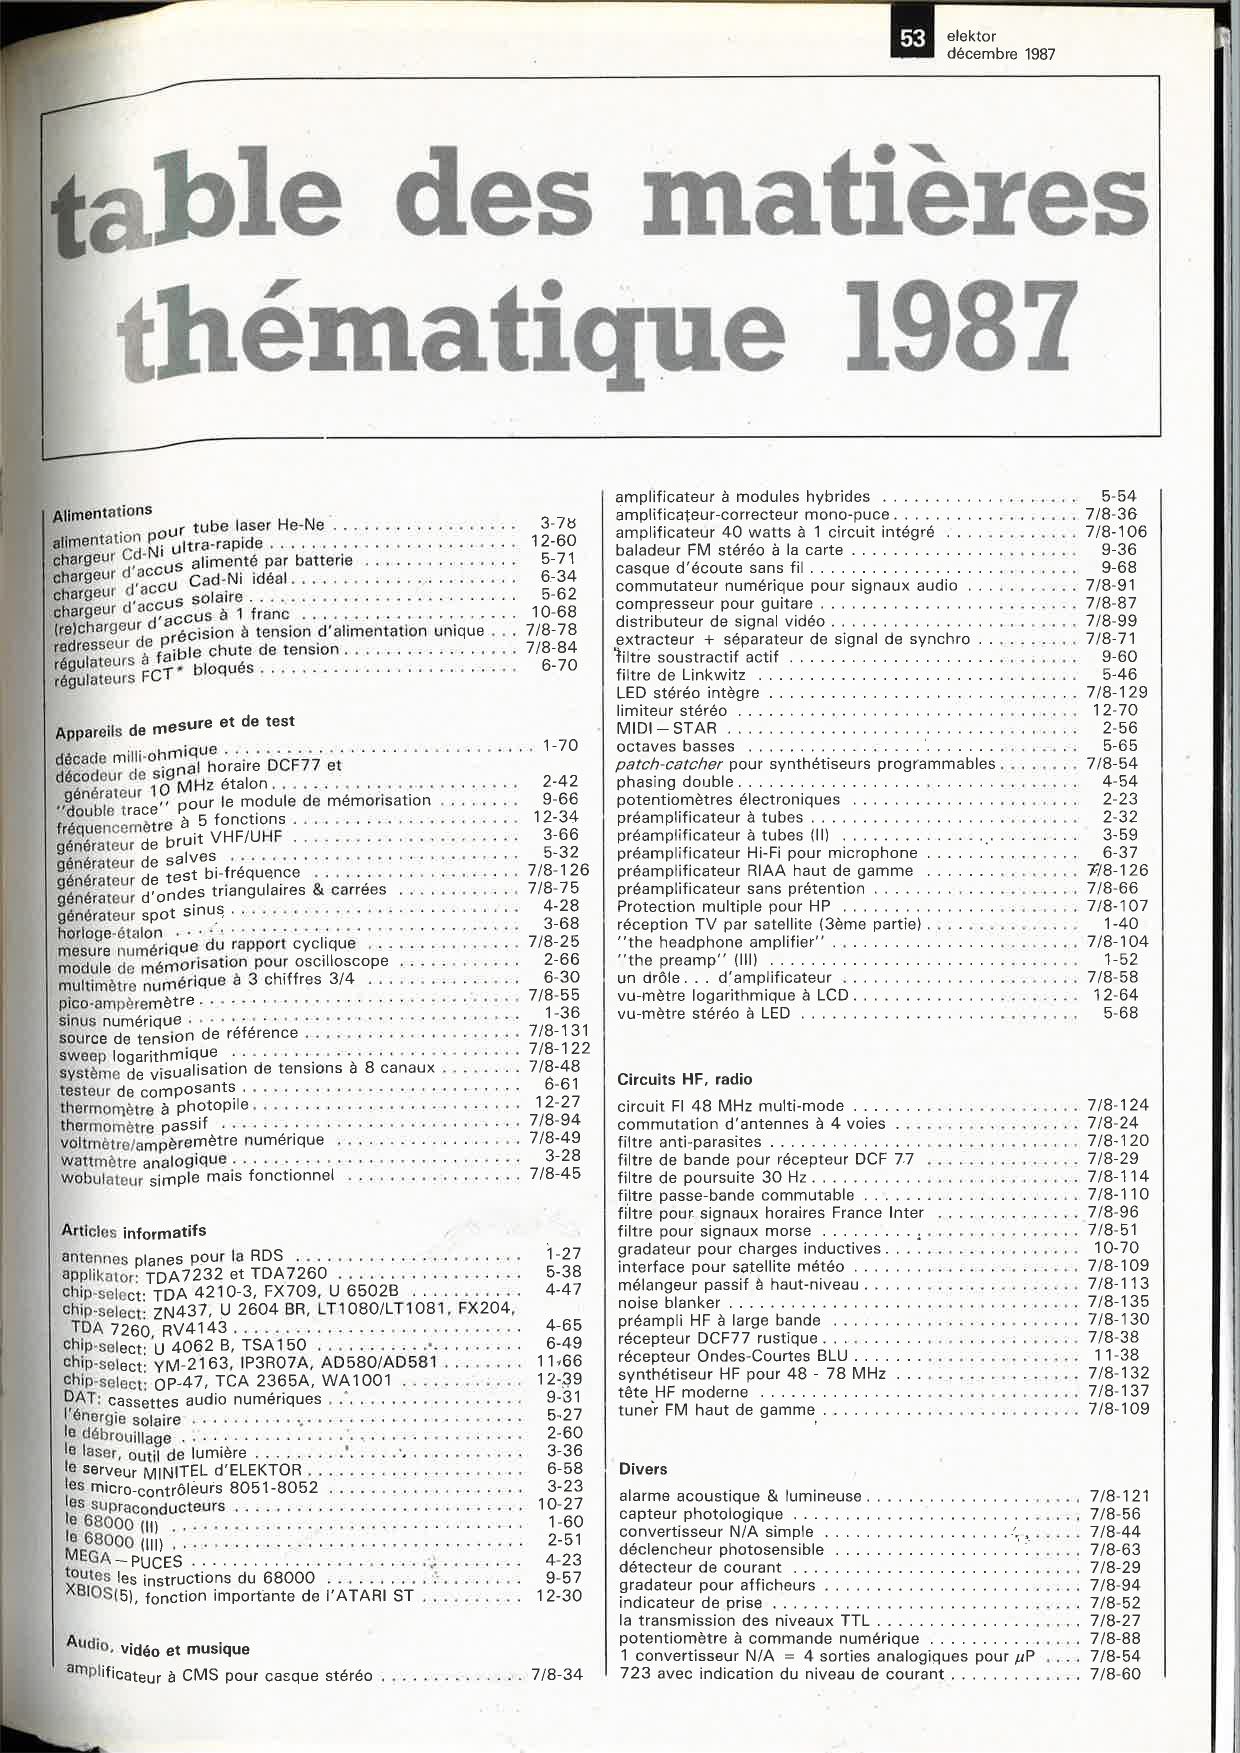 table des matières thématique 1987